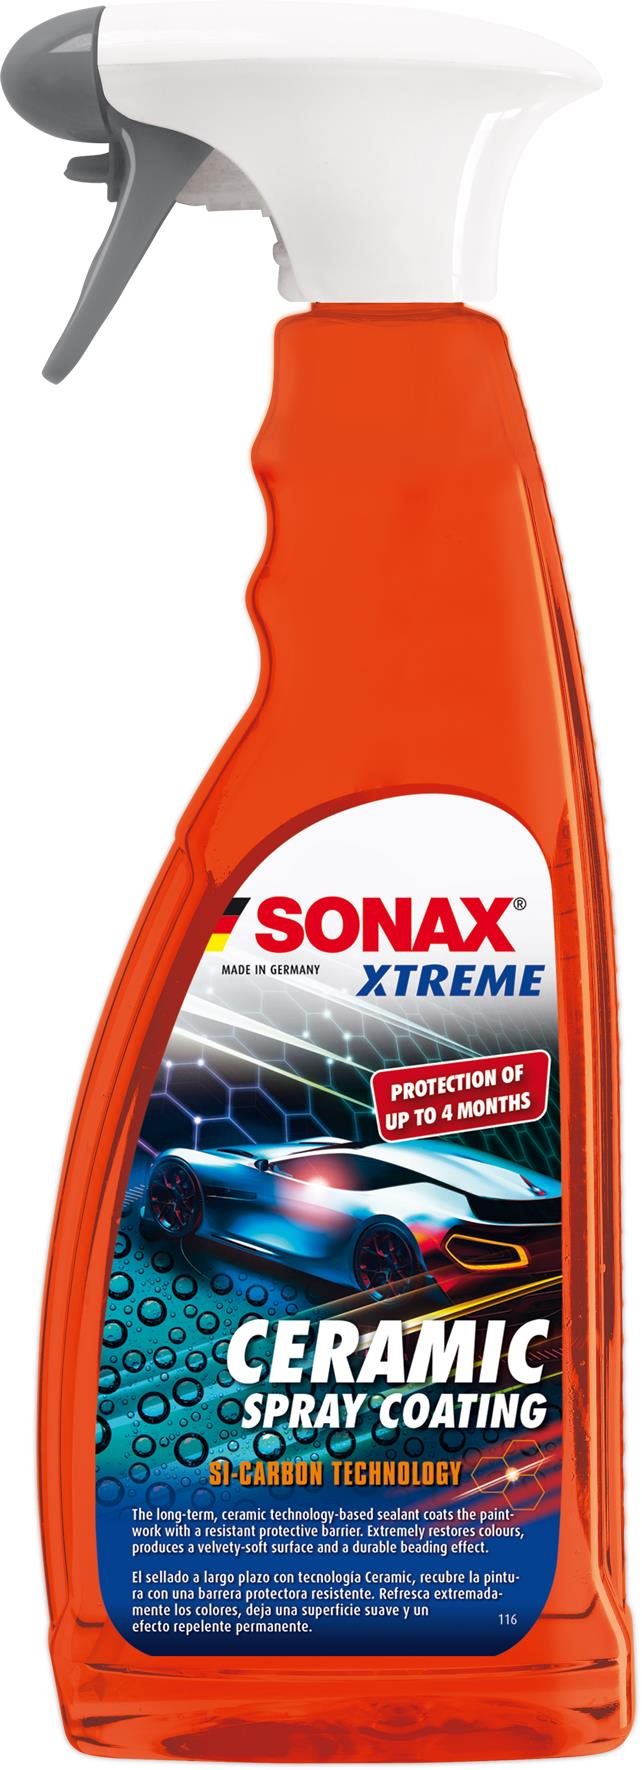 Sonax Xtreme Ceramic Spray Versiegelung